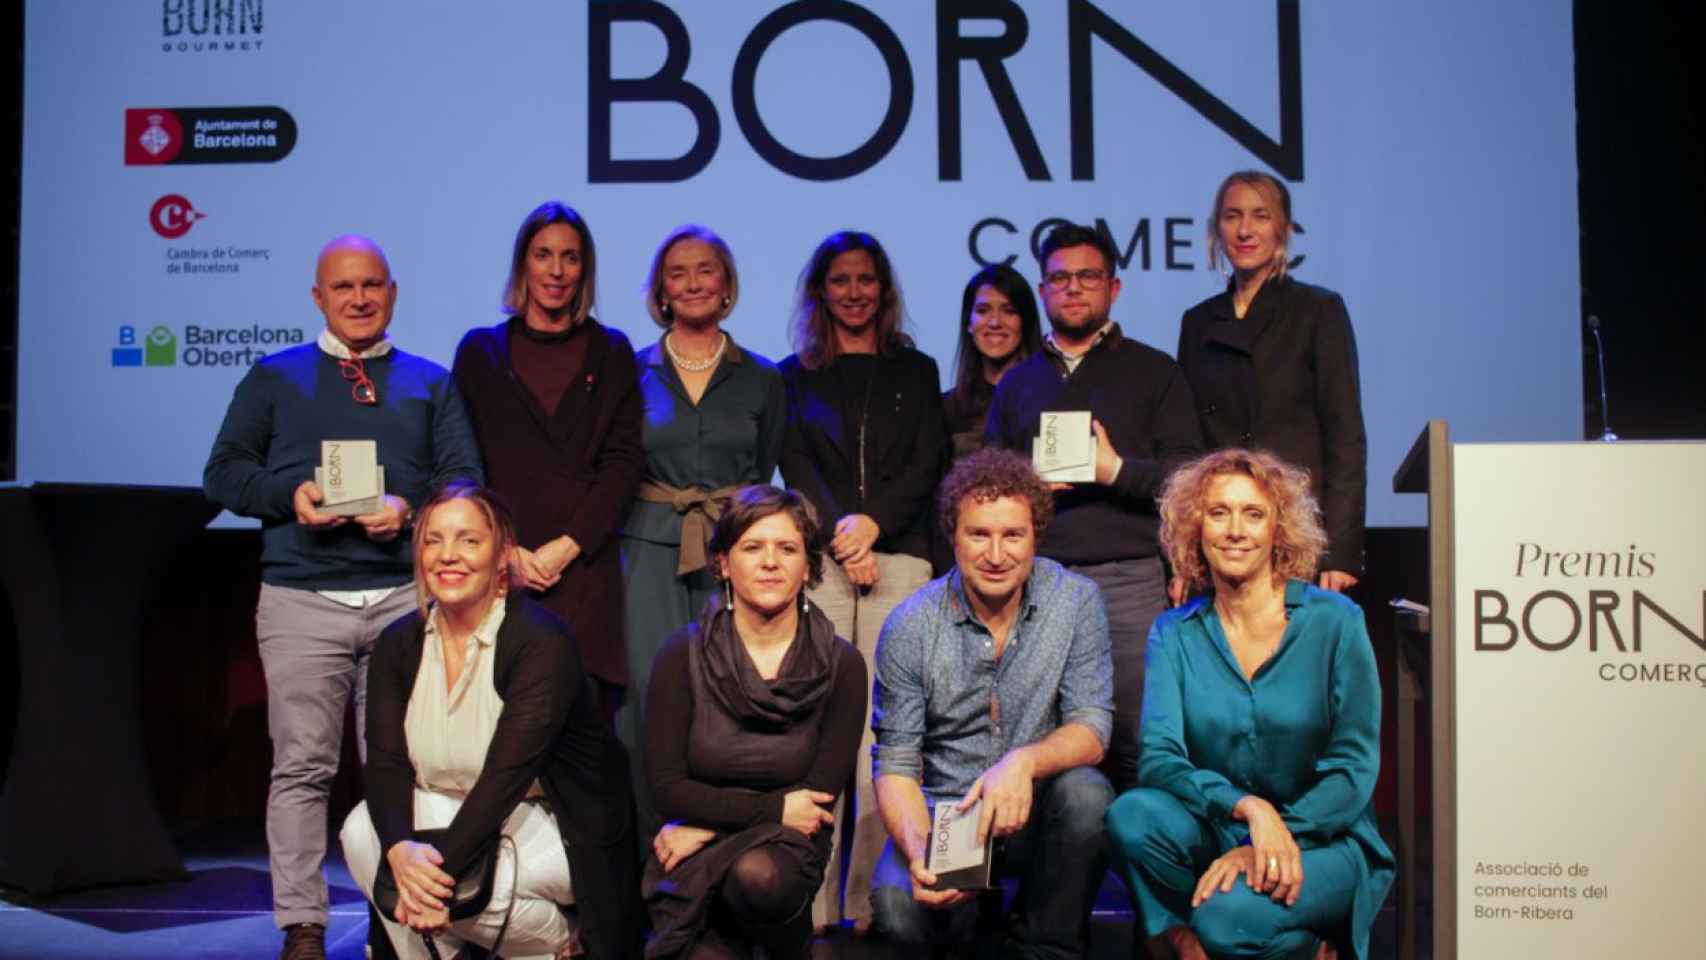 Premiados y autoridades en la gala de Born Comercio / F.C.